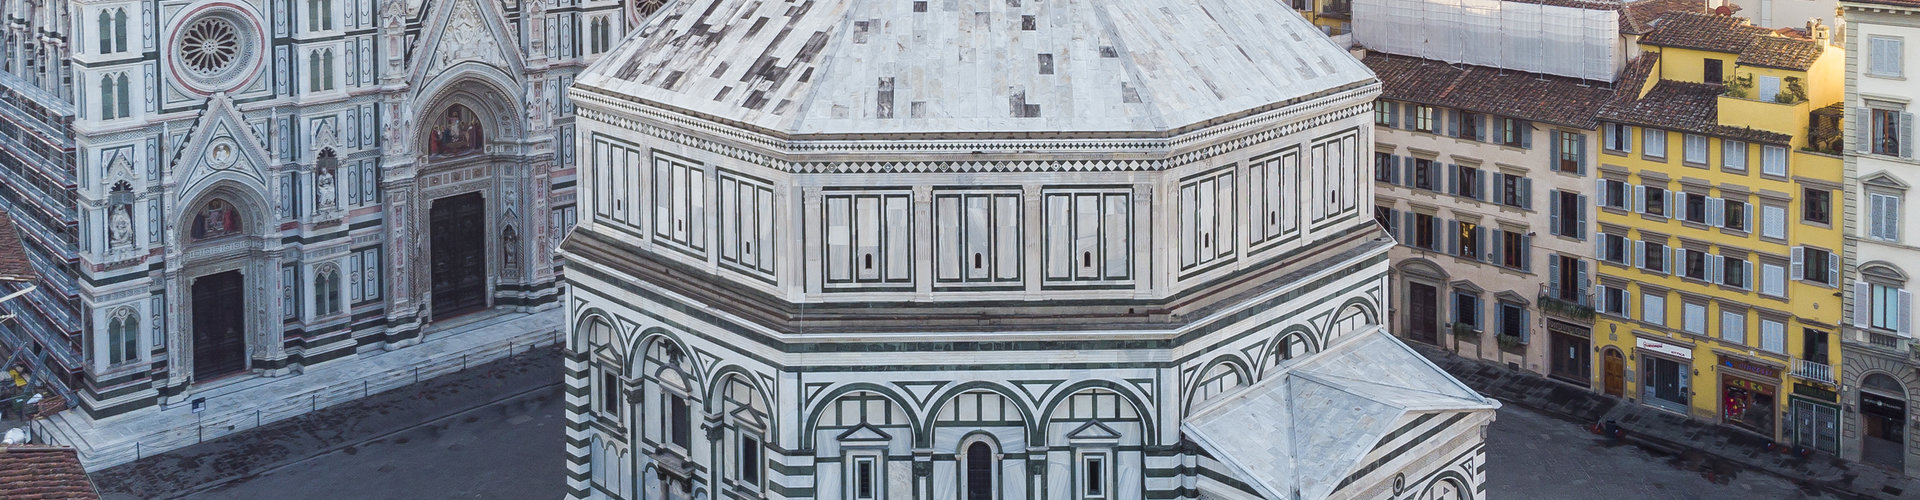 Firenze: chiusi per ispezioni Campanile di Giotto e Cupola Brunelleschi